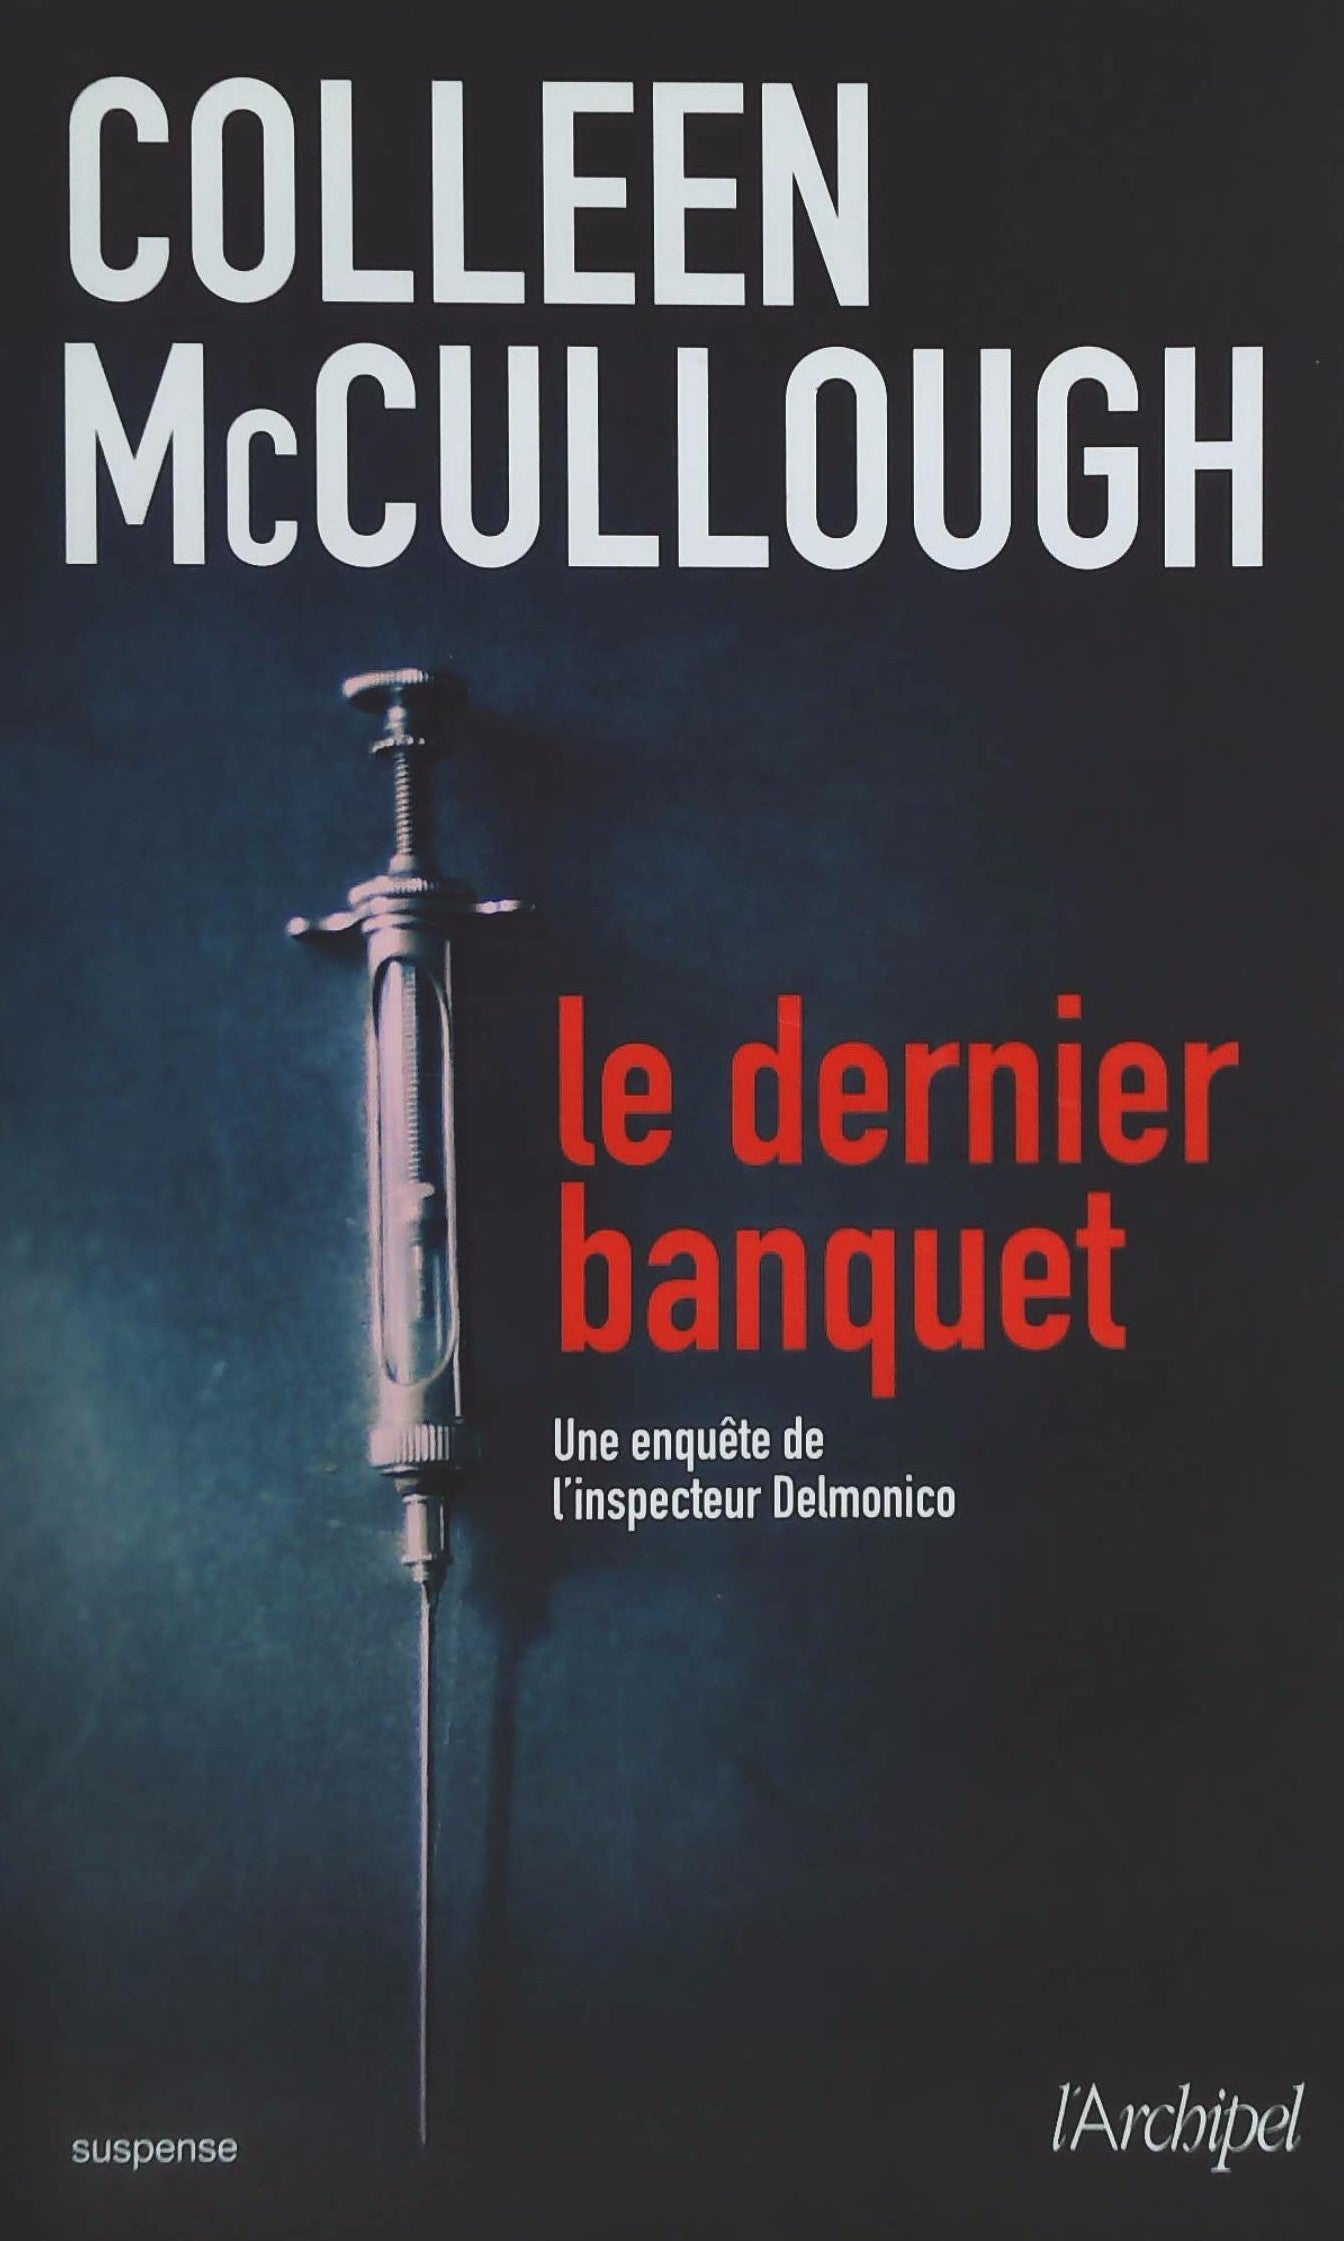 Livre ISBN 280981483X Le dernier banquet : Une enquête de l'inspecteur Delmonico (Colleen McCullough)